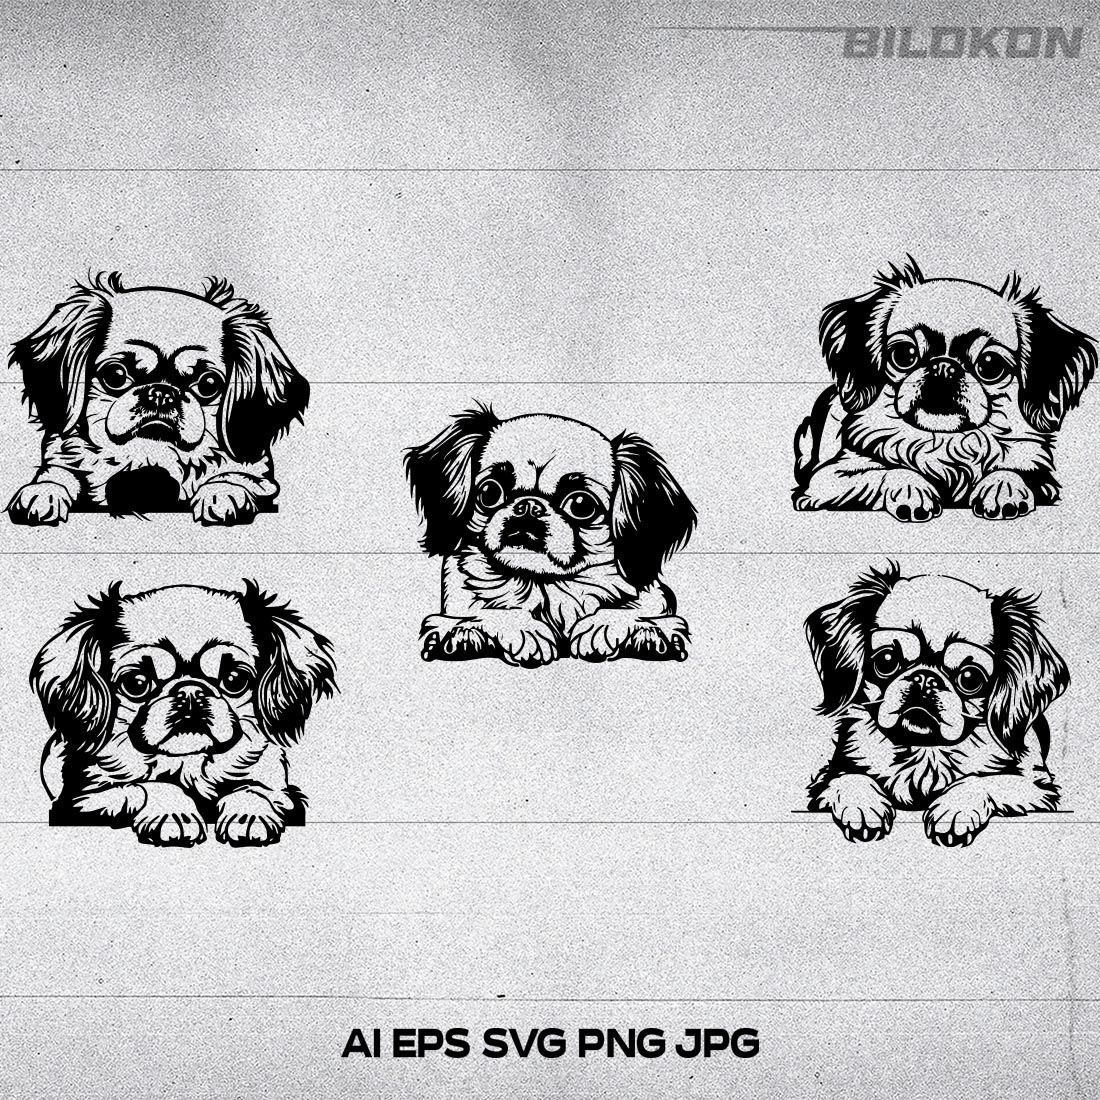 Pekingese dog head, SVG, Vector, Illustration, SVG Bundle cover image.